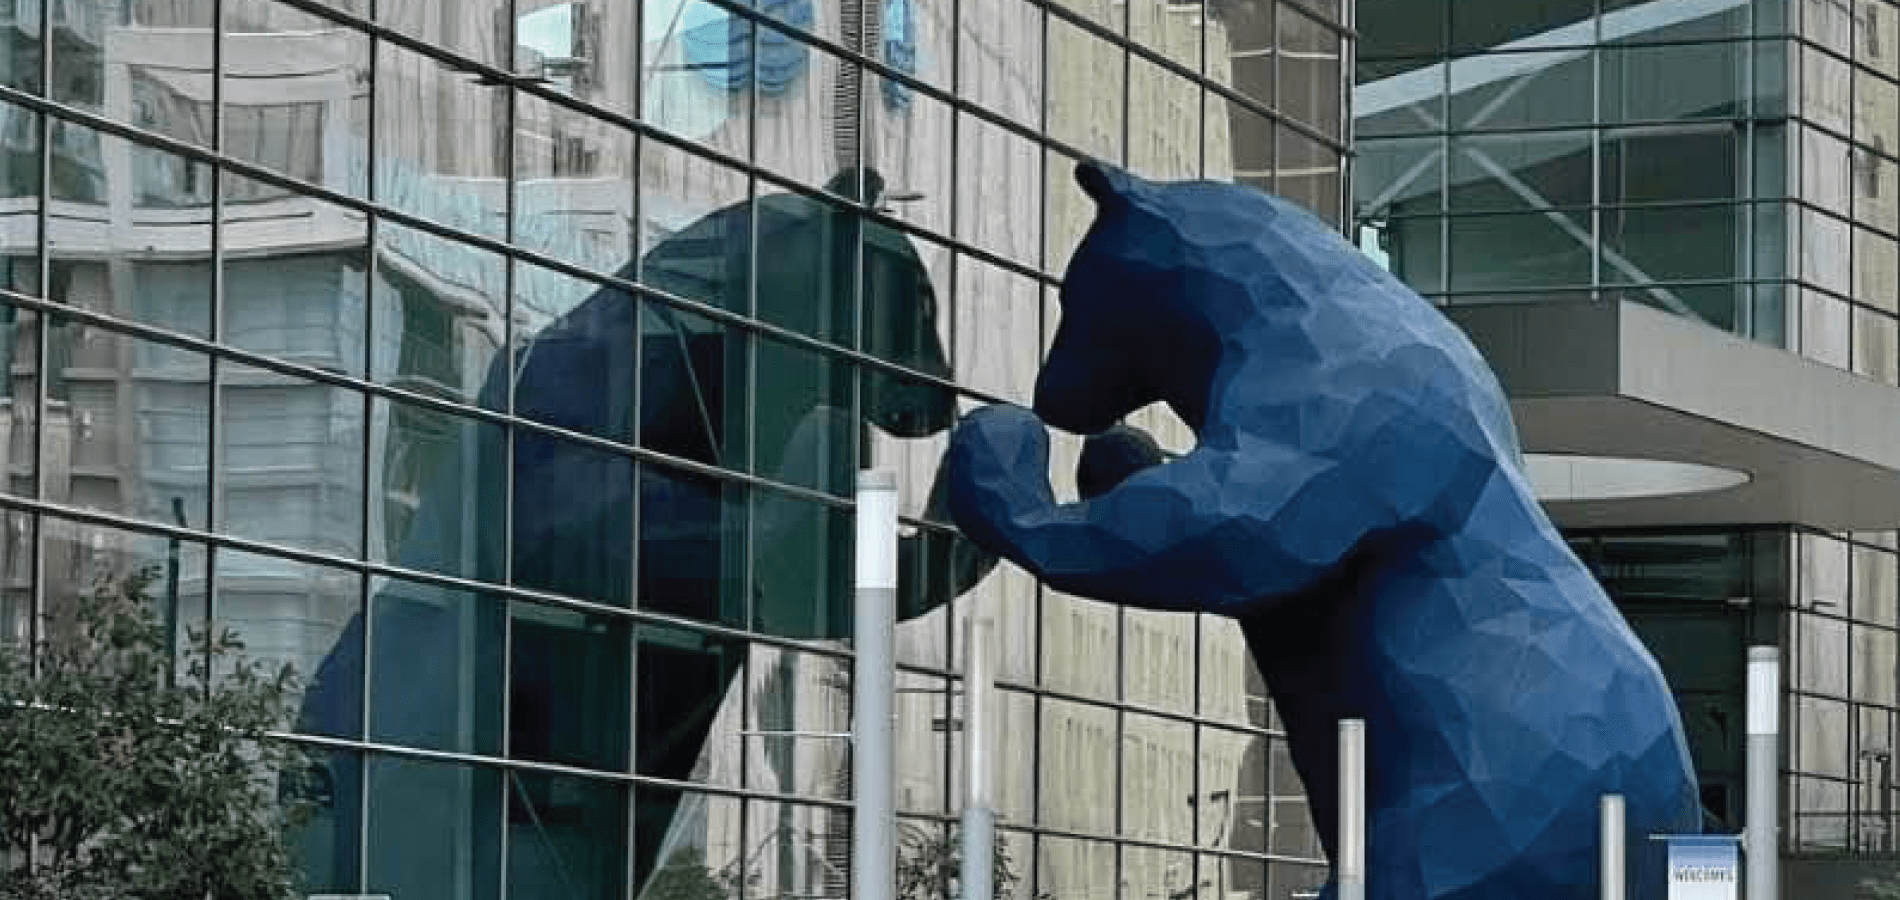 Big Blue Bear in Denver, CO